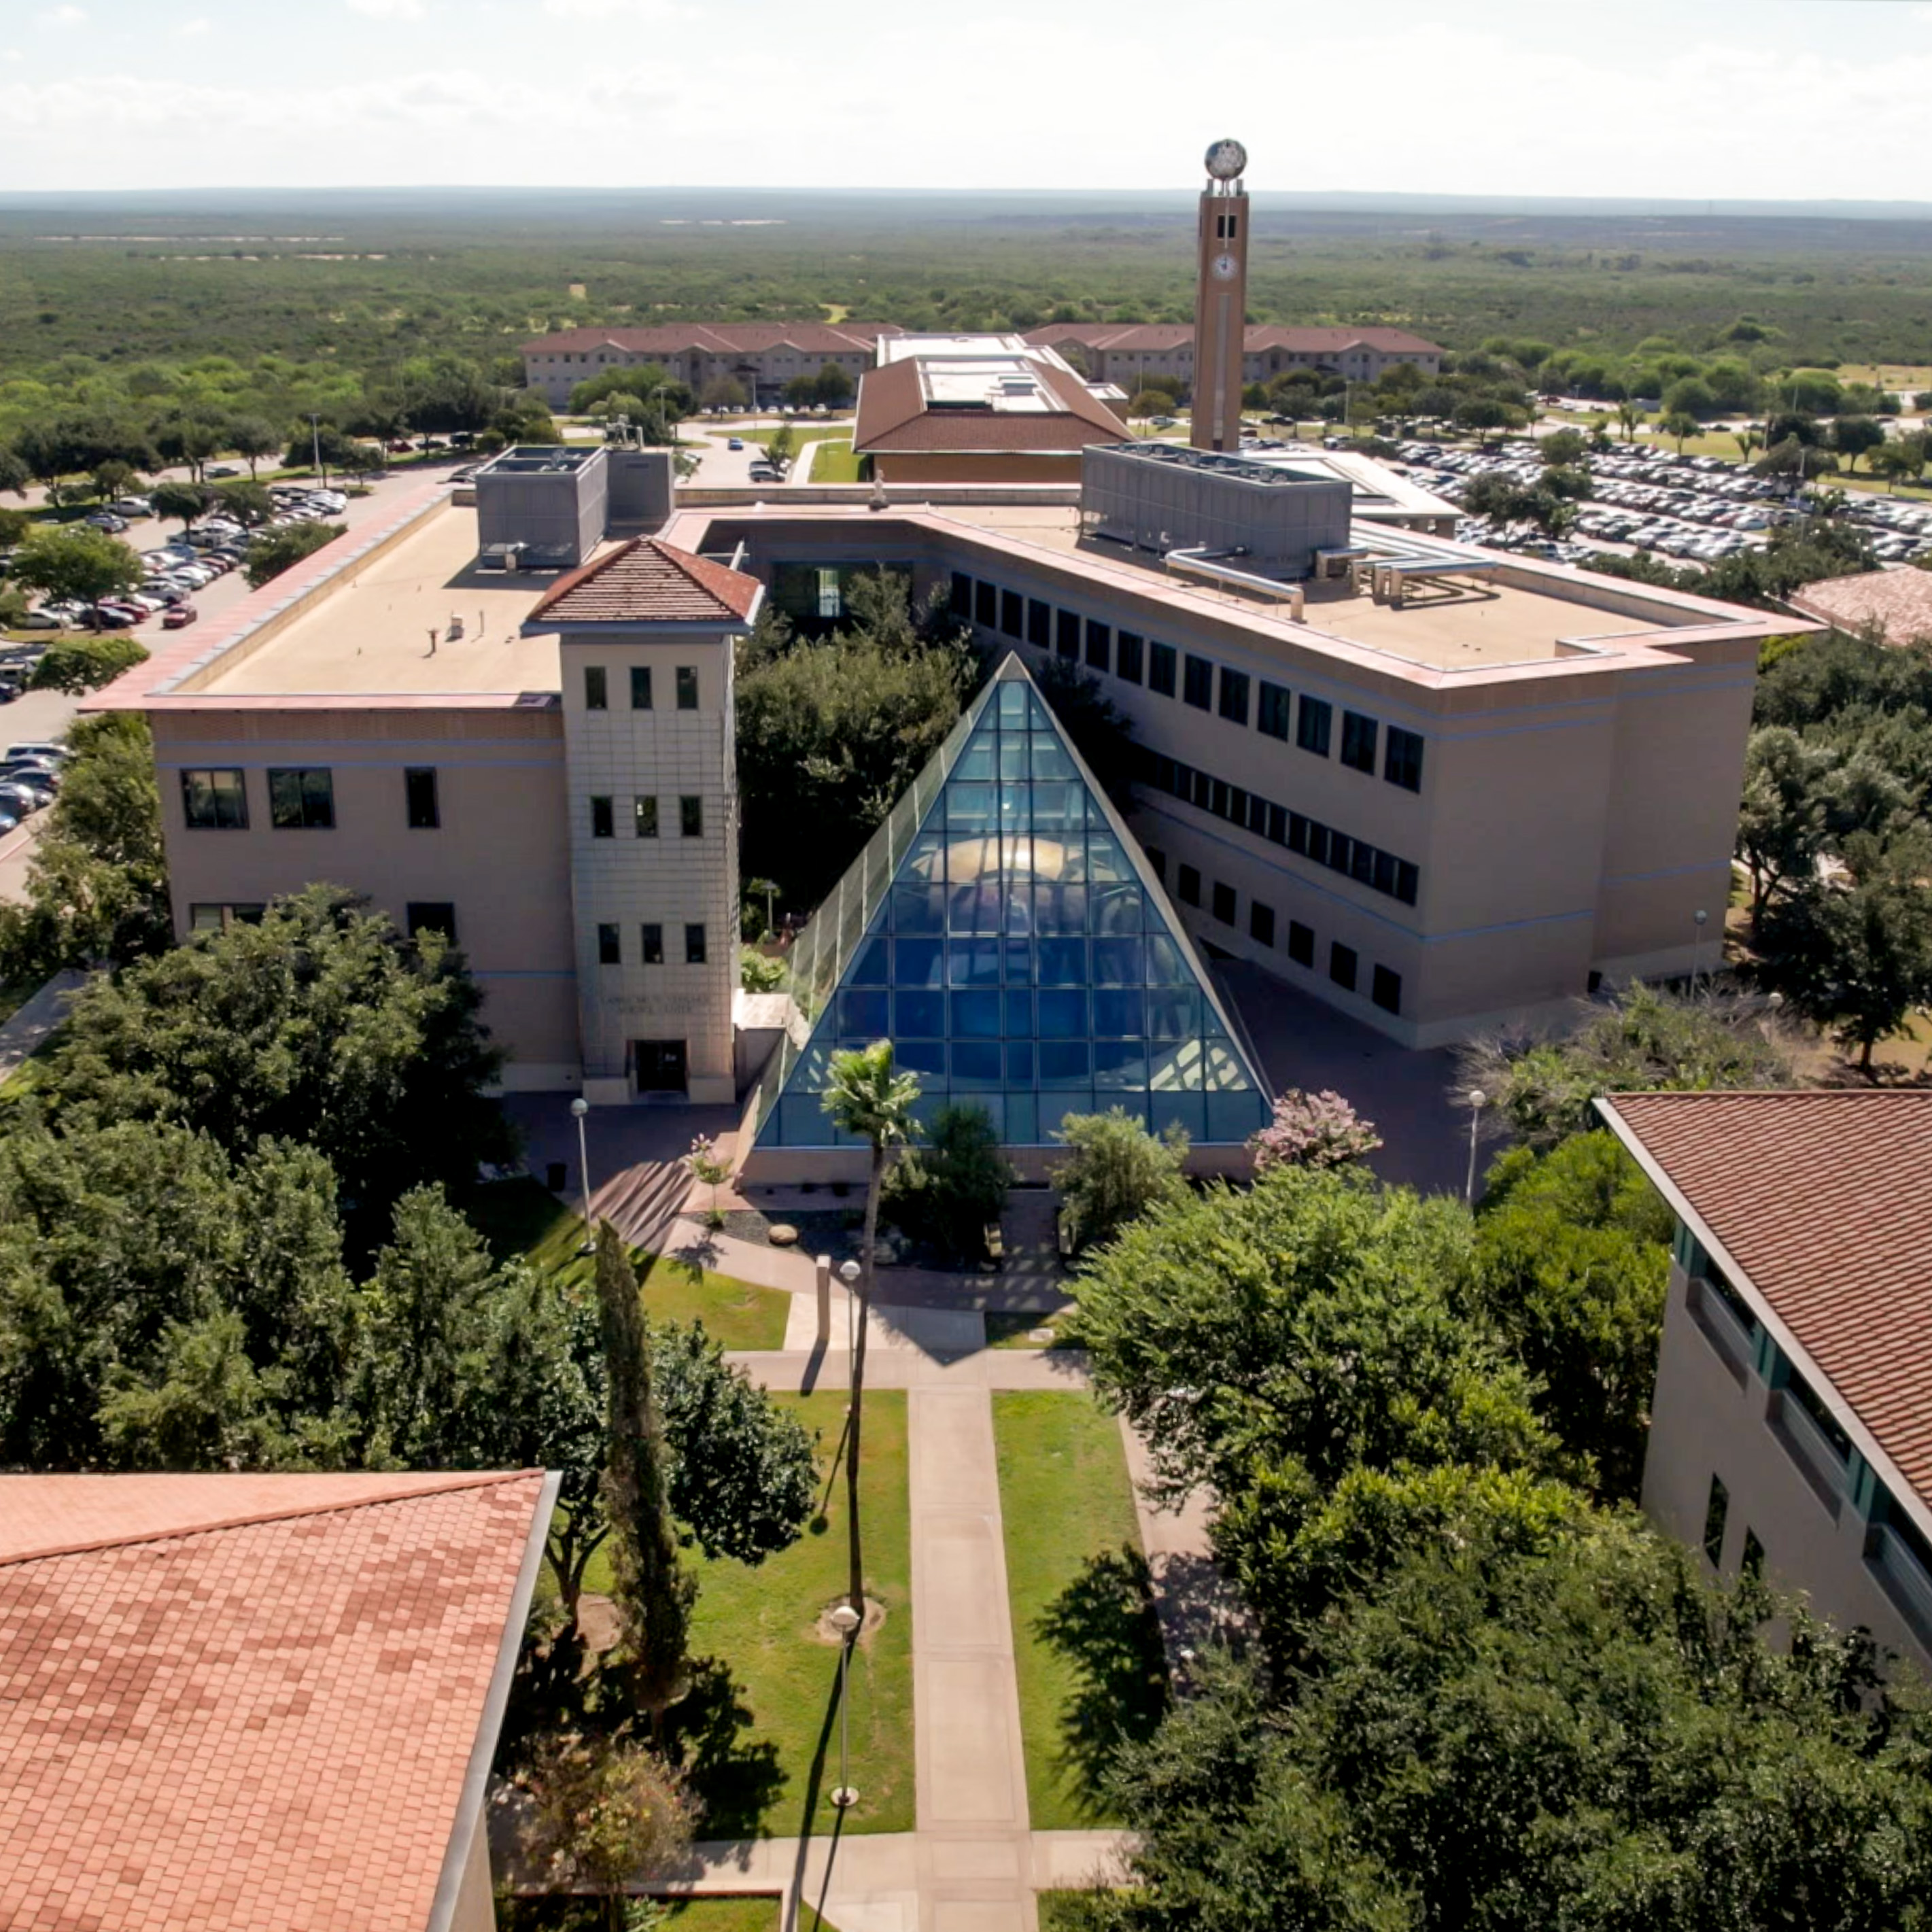 Aerial view of campus with Planetarium